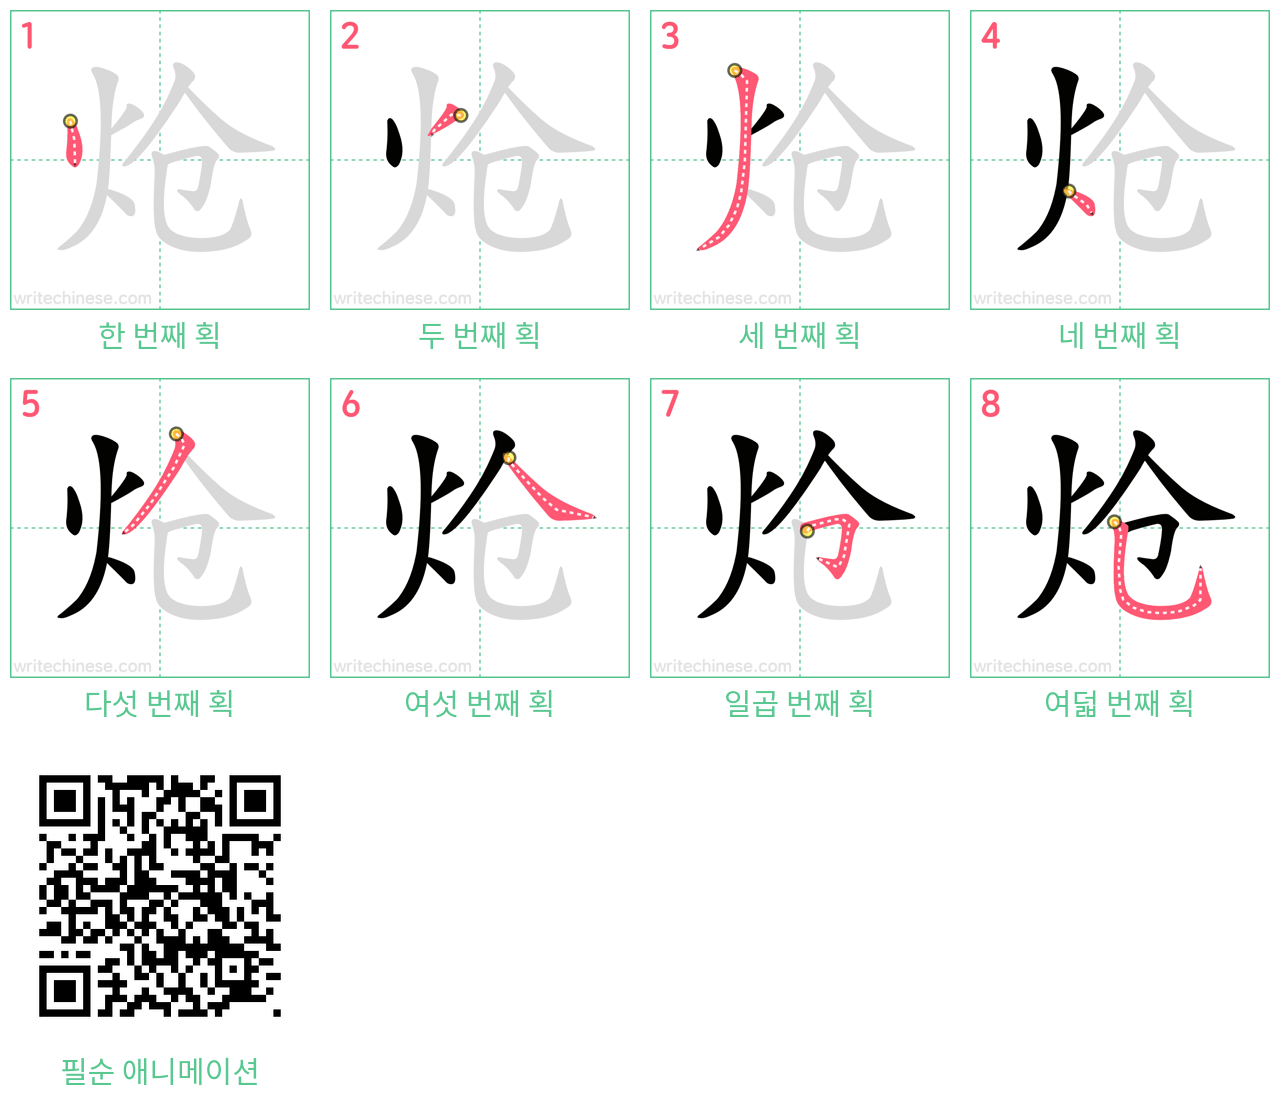 炝 step-by-step stroke order diagrams